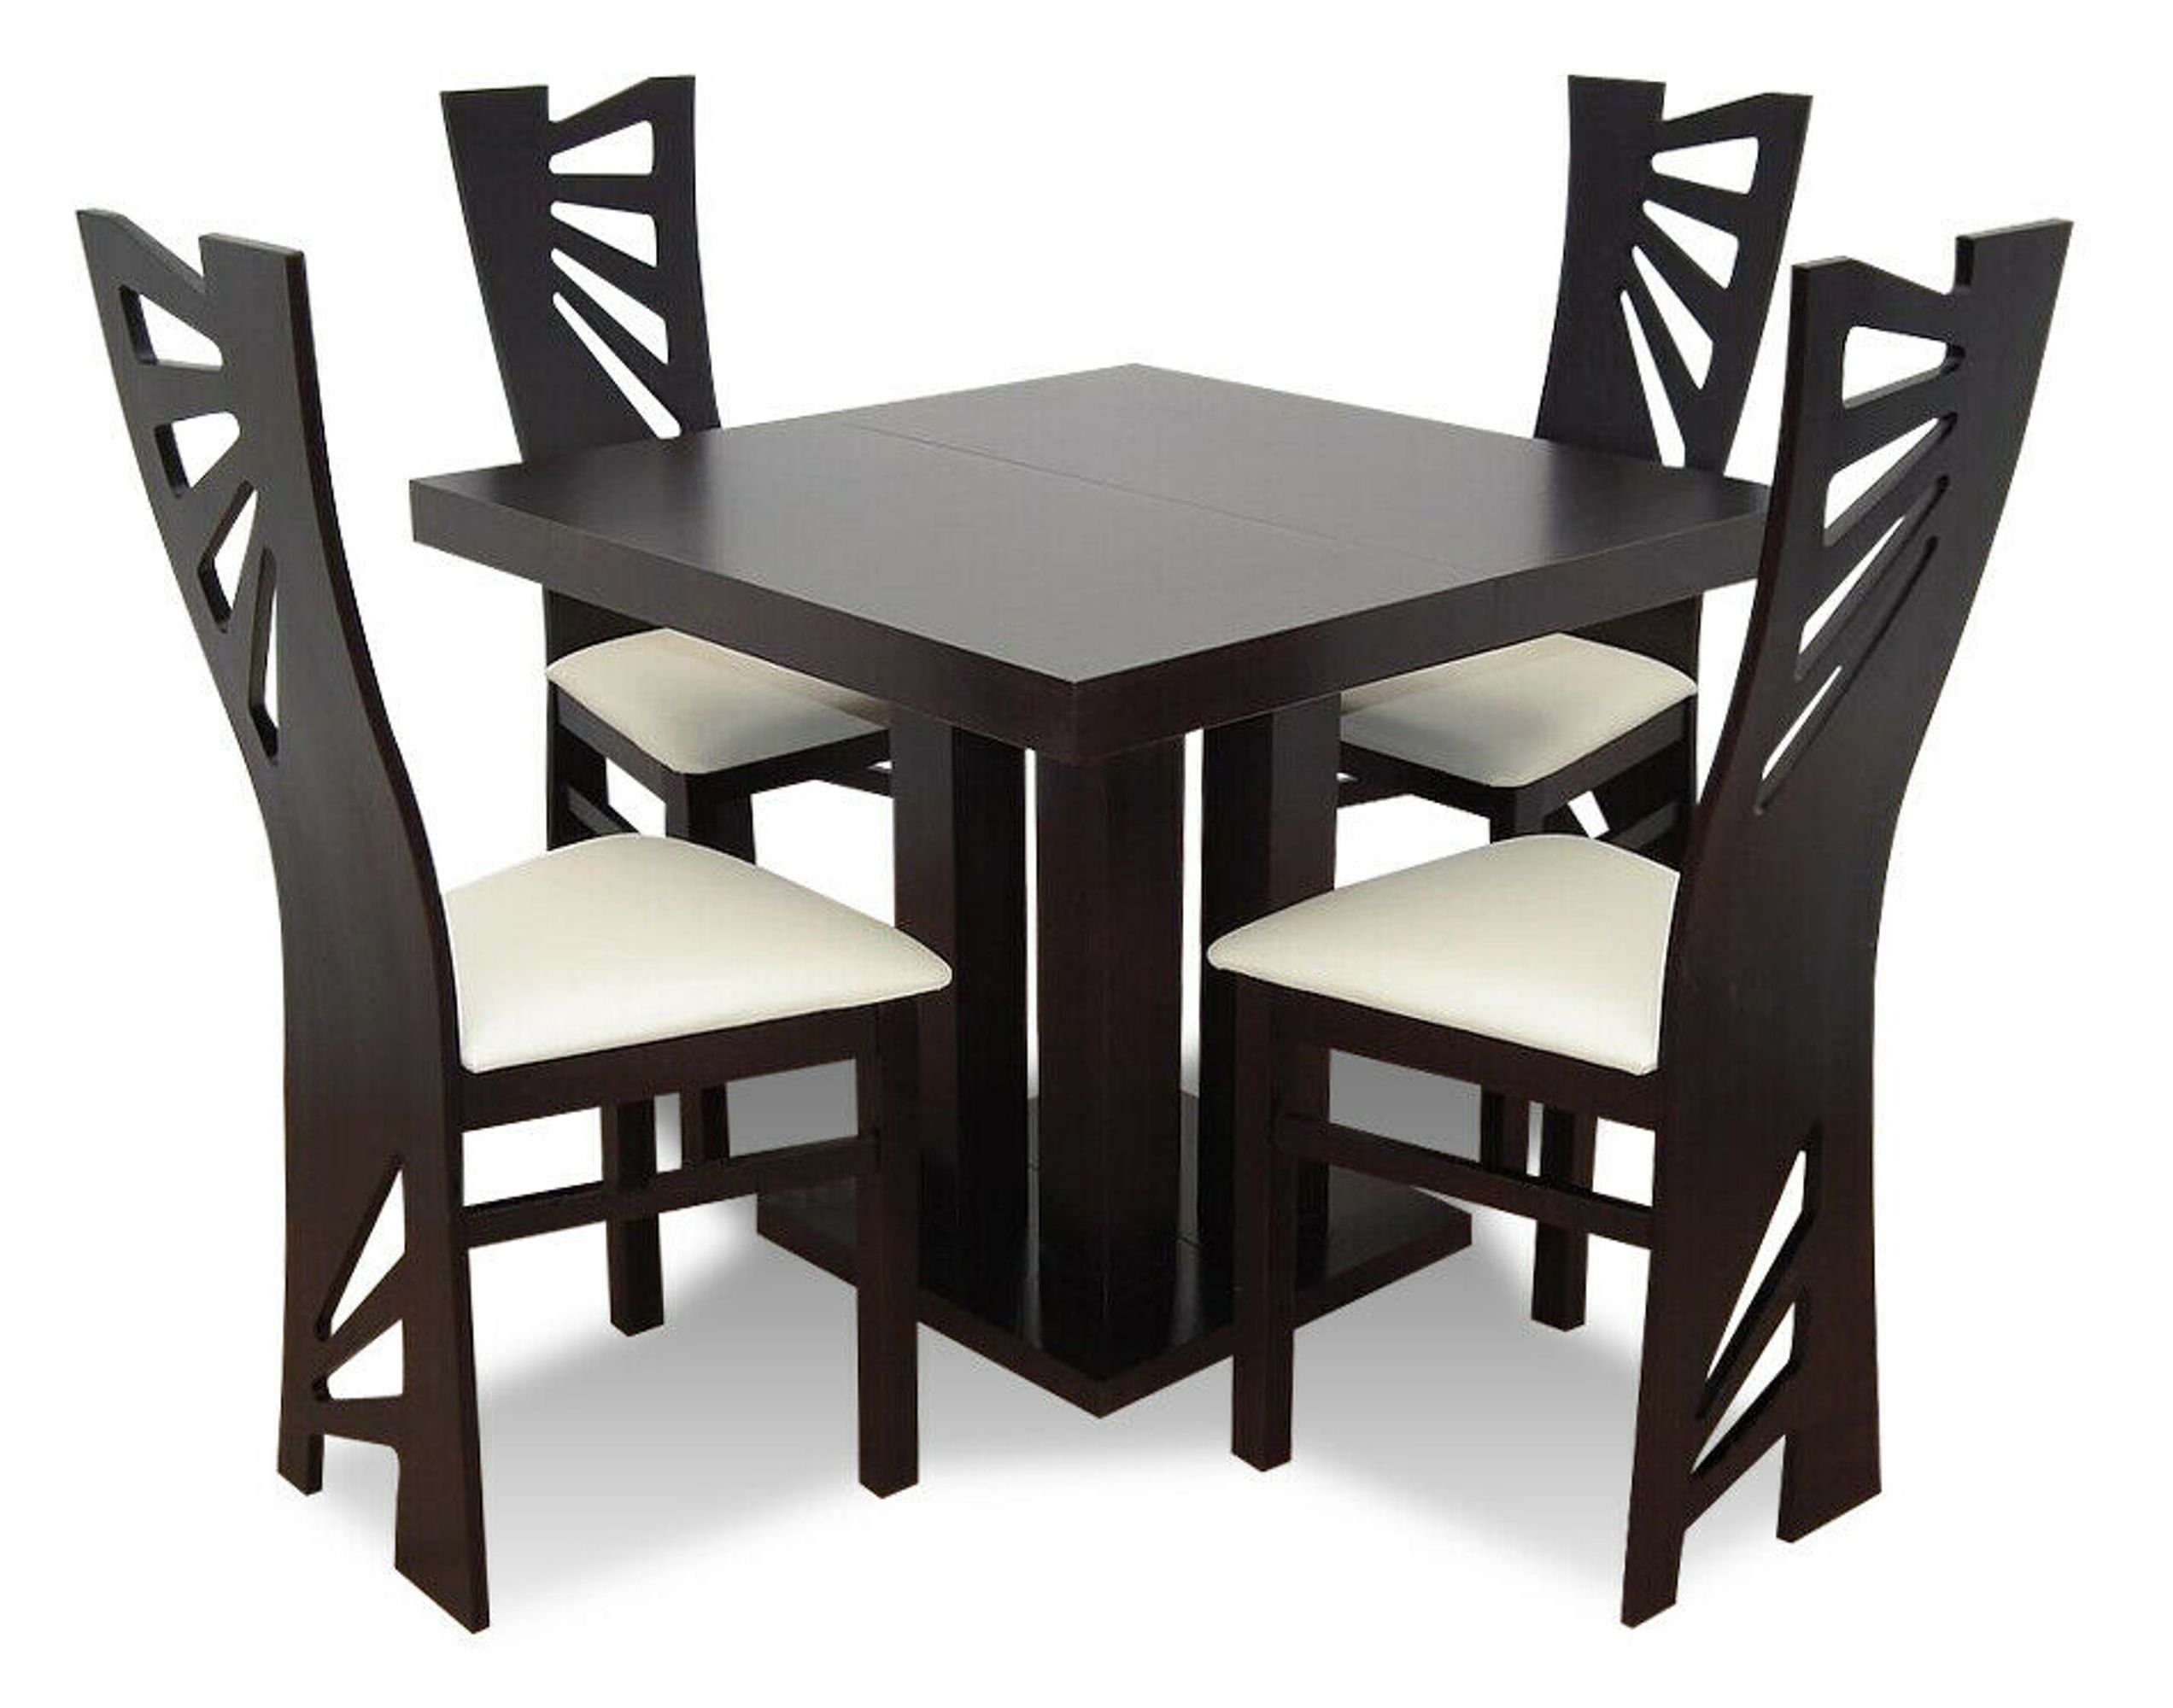 JVmoebel Essgruppe, Essgarnitur Esstisch Tisch Holz Esszimmer Garnitur 4x Stuhl Set Stühle 5 tlg.Set